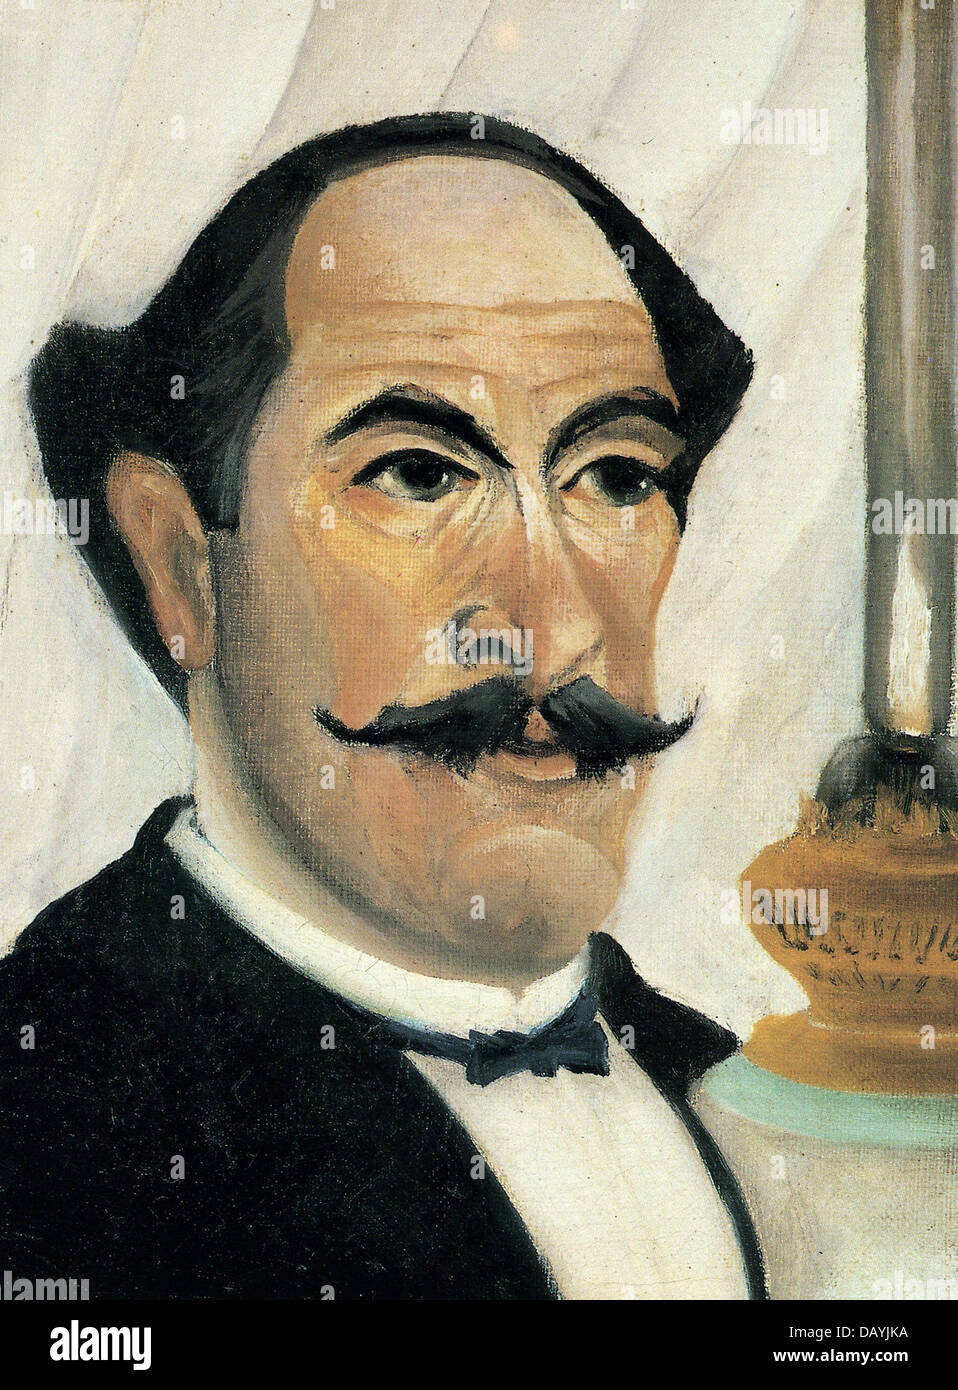 Henri Rousseau - Le Douanier Rousseau Self-portrait with lamp 1903 Stock Photo